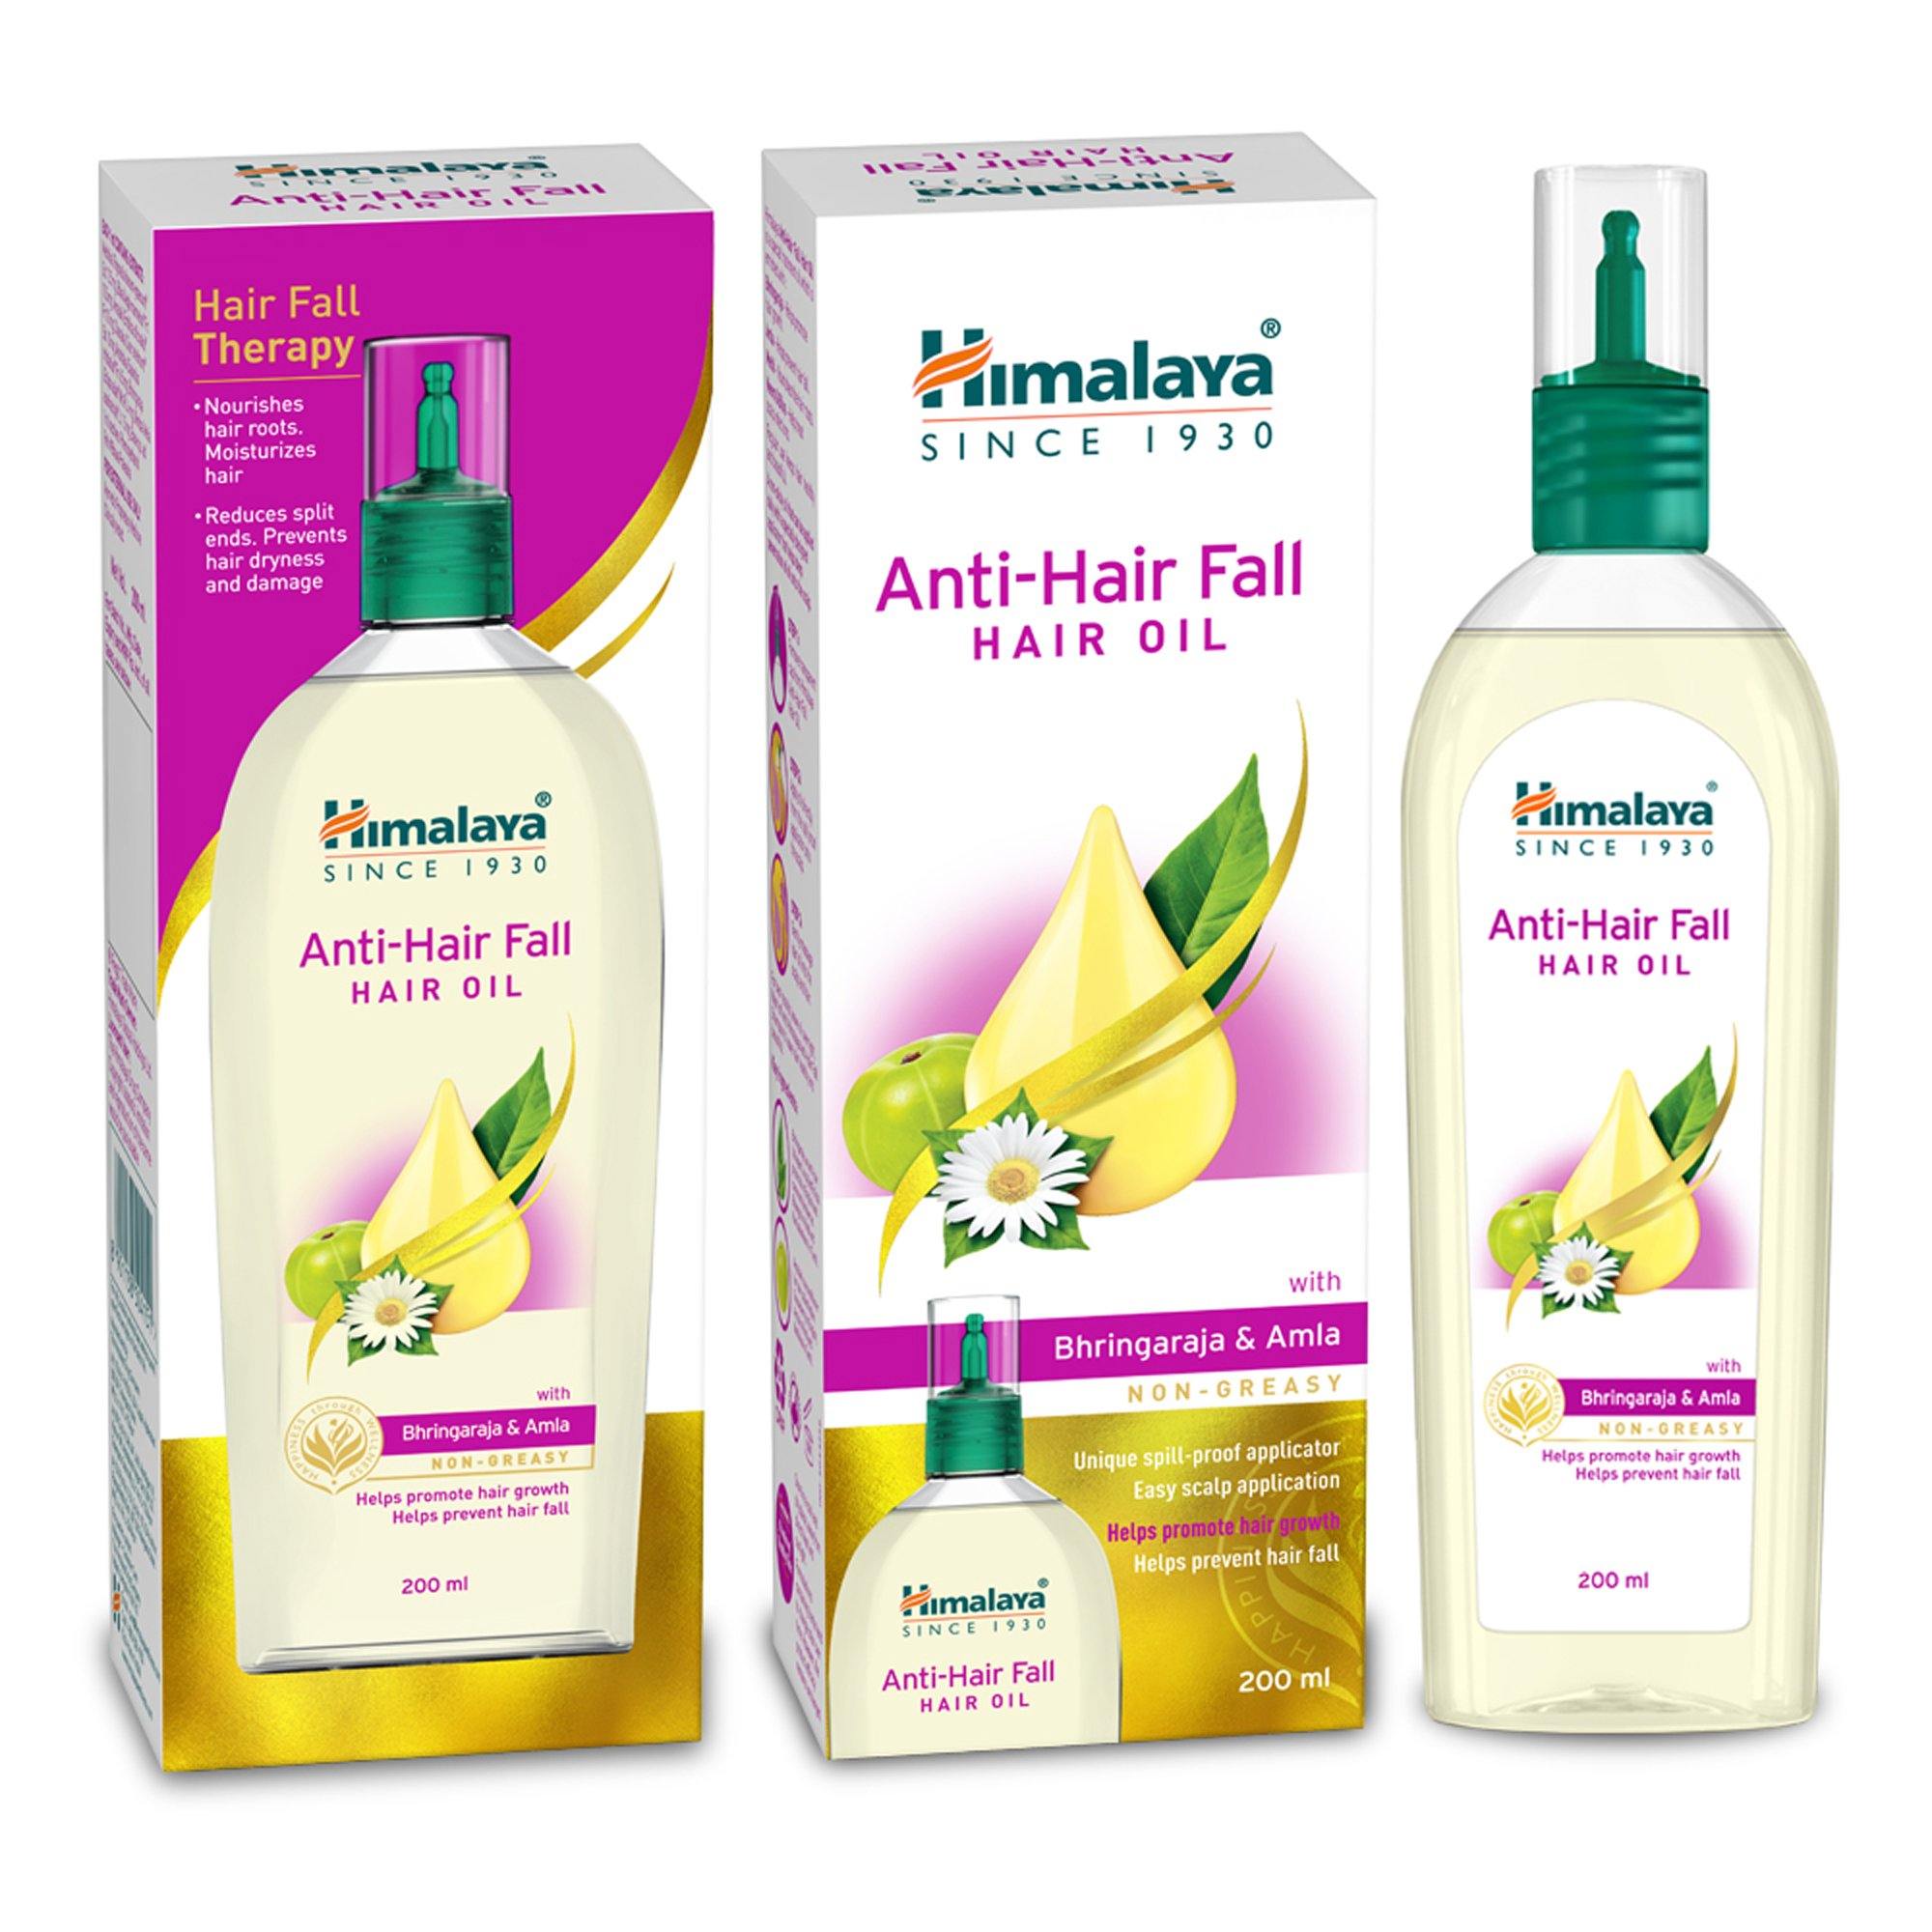 Anti-Hair Fall Hair Oil - Himalaya Wellness (India)